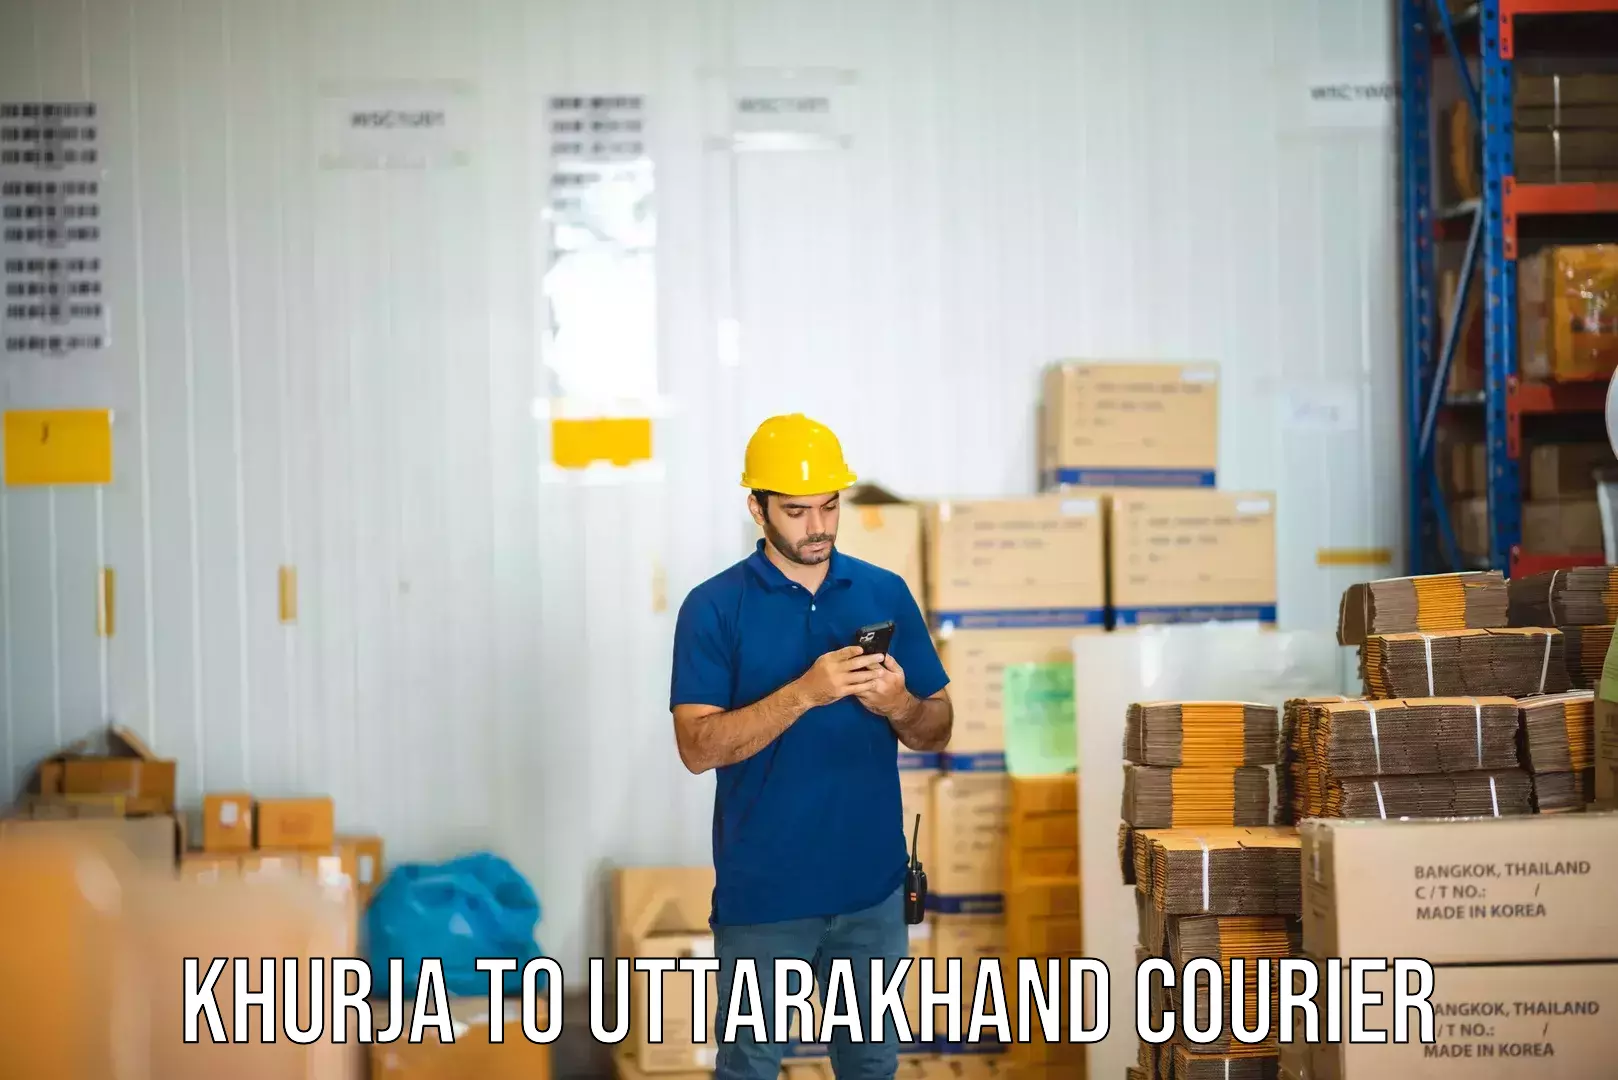 Efficient freight service Khurja to Uttarakhand